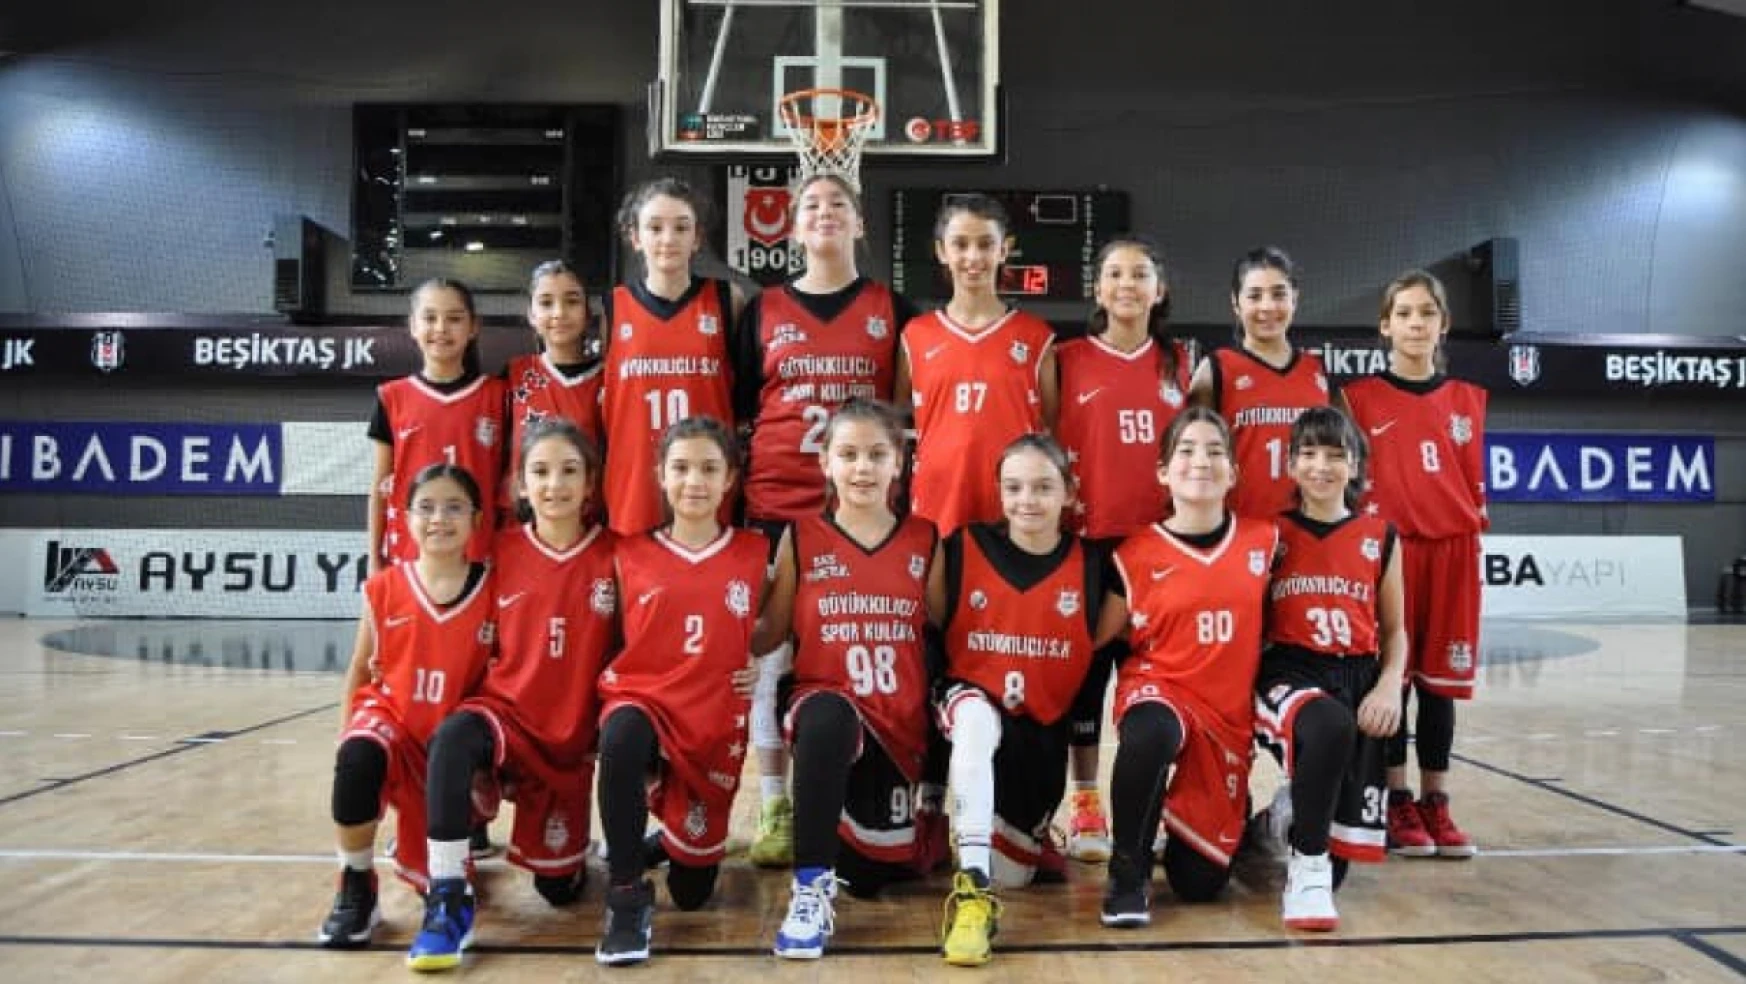 Kılıçlı'nın kızları Beşiktaş'ı devirdi 42-38